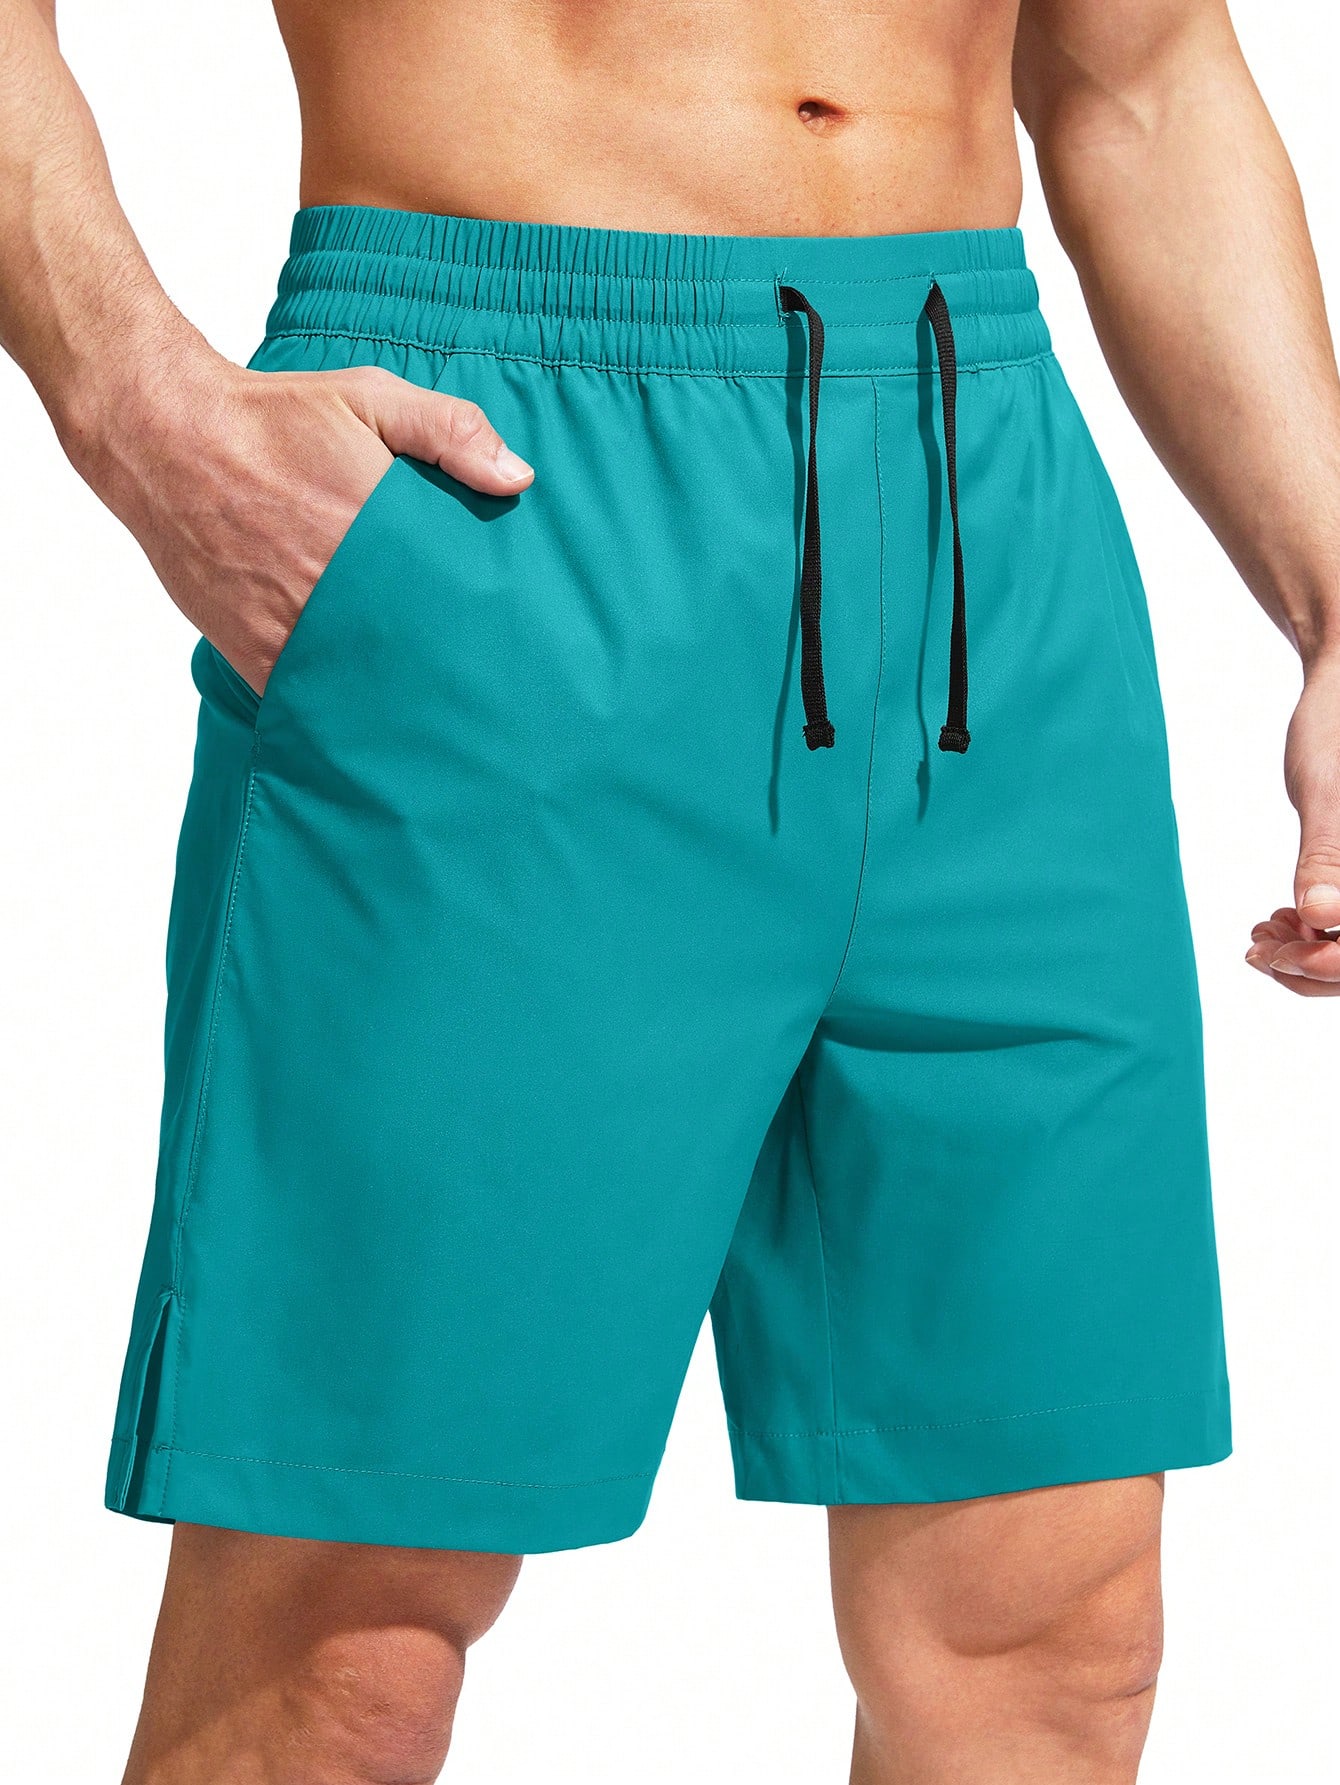 цена G Gradual G Gradual Мужские плавки Быстросохнущий купальный костюм Пляжные шорты для мужчин с карманами на молнии и сетчатой ​​подкладкой Серые шорты, мятно-зеленый